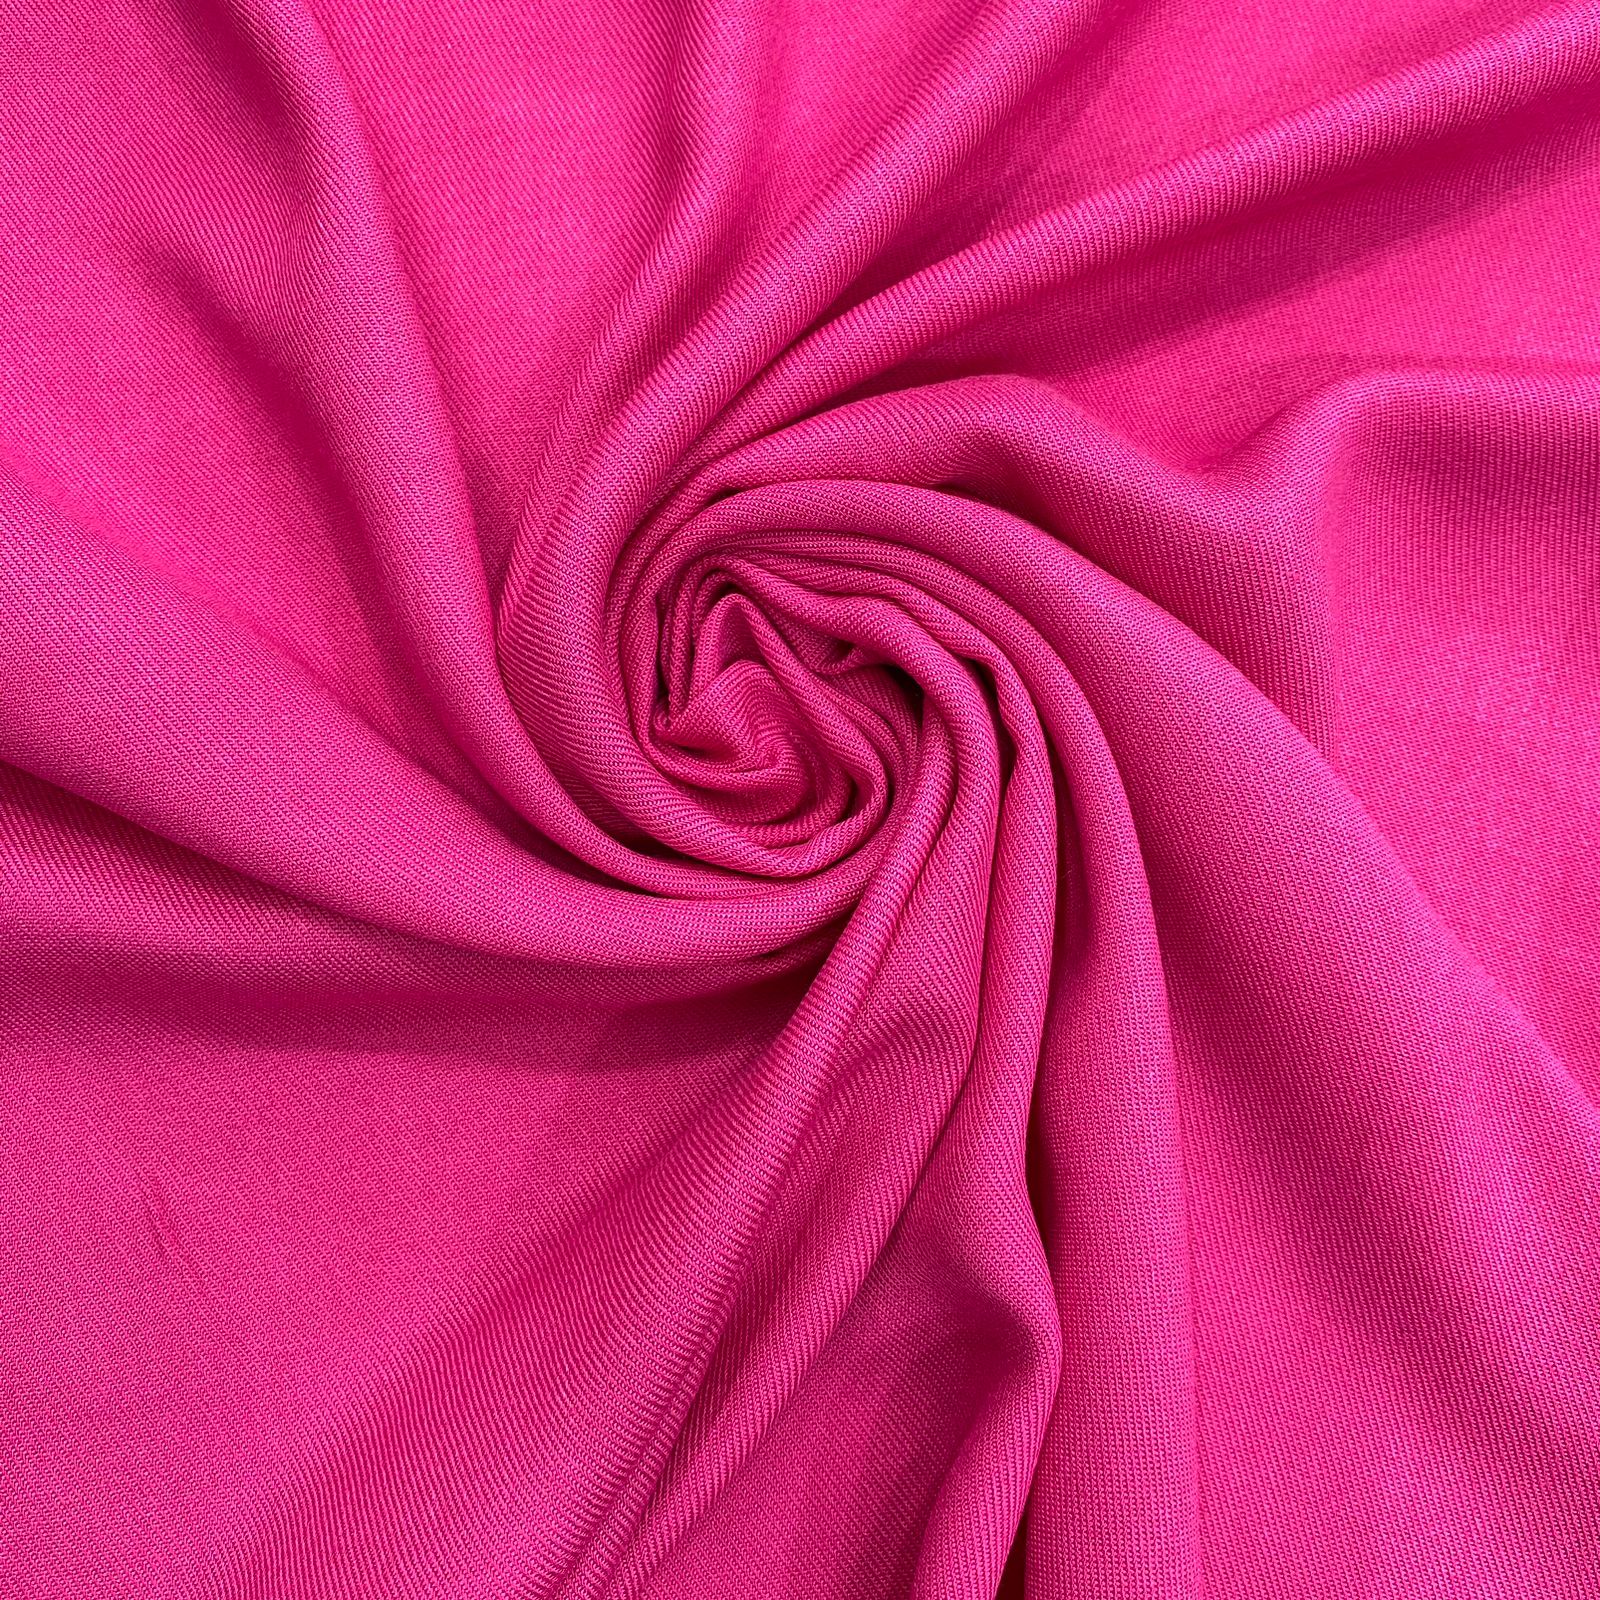 Tecido viscose rayon estampado xadrez marrom/pink